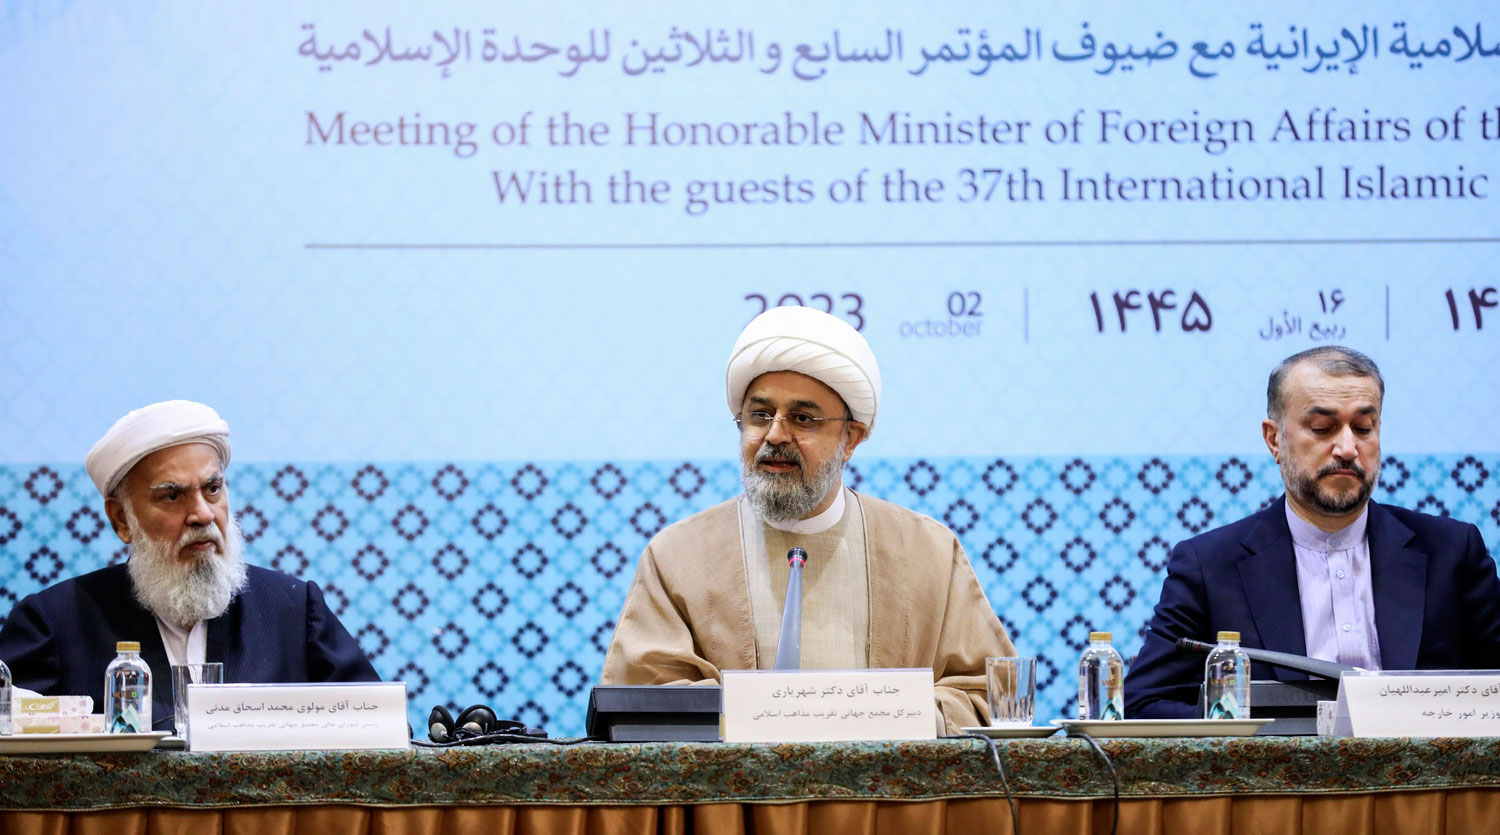 مراسم دیدار وزیر امور خارجه با میهمانان سی و هفتمین کنفرانس وحدت اسلامی